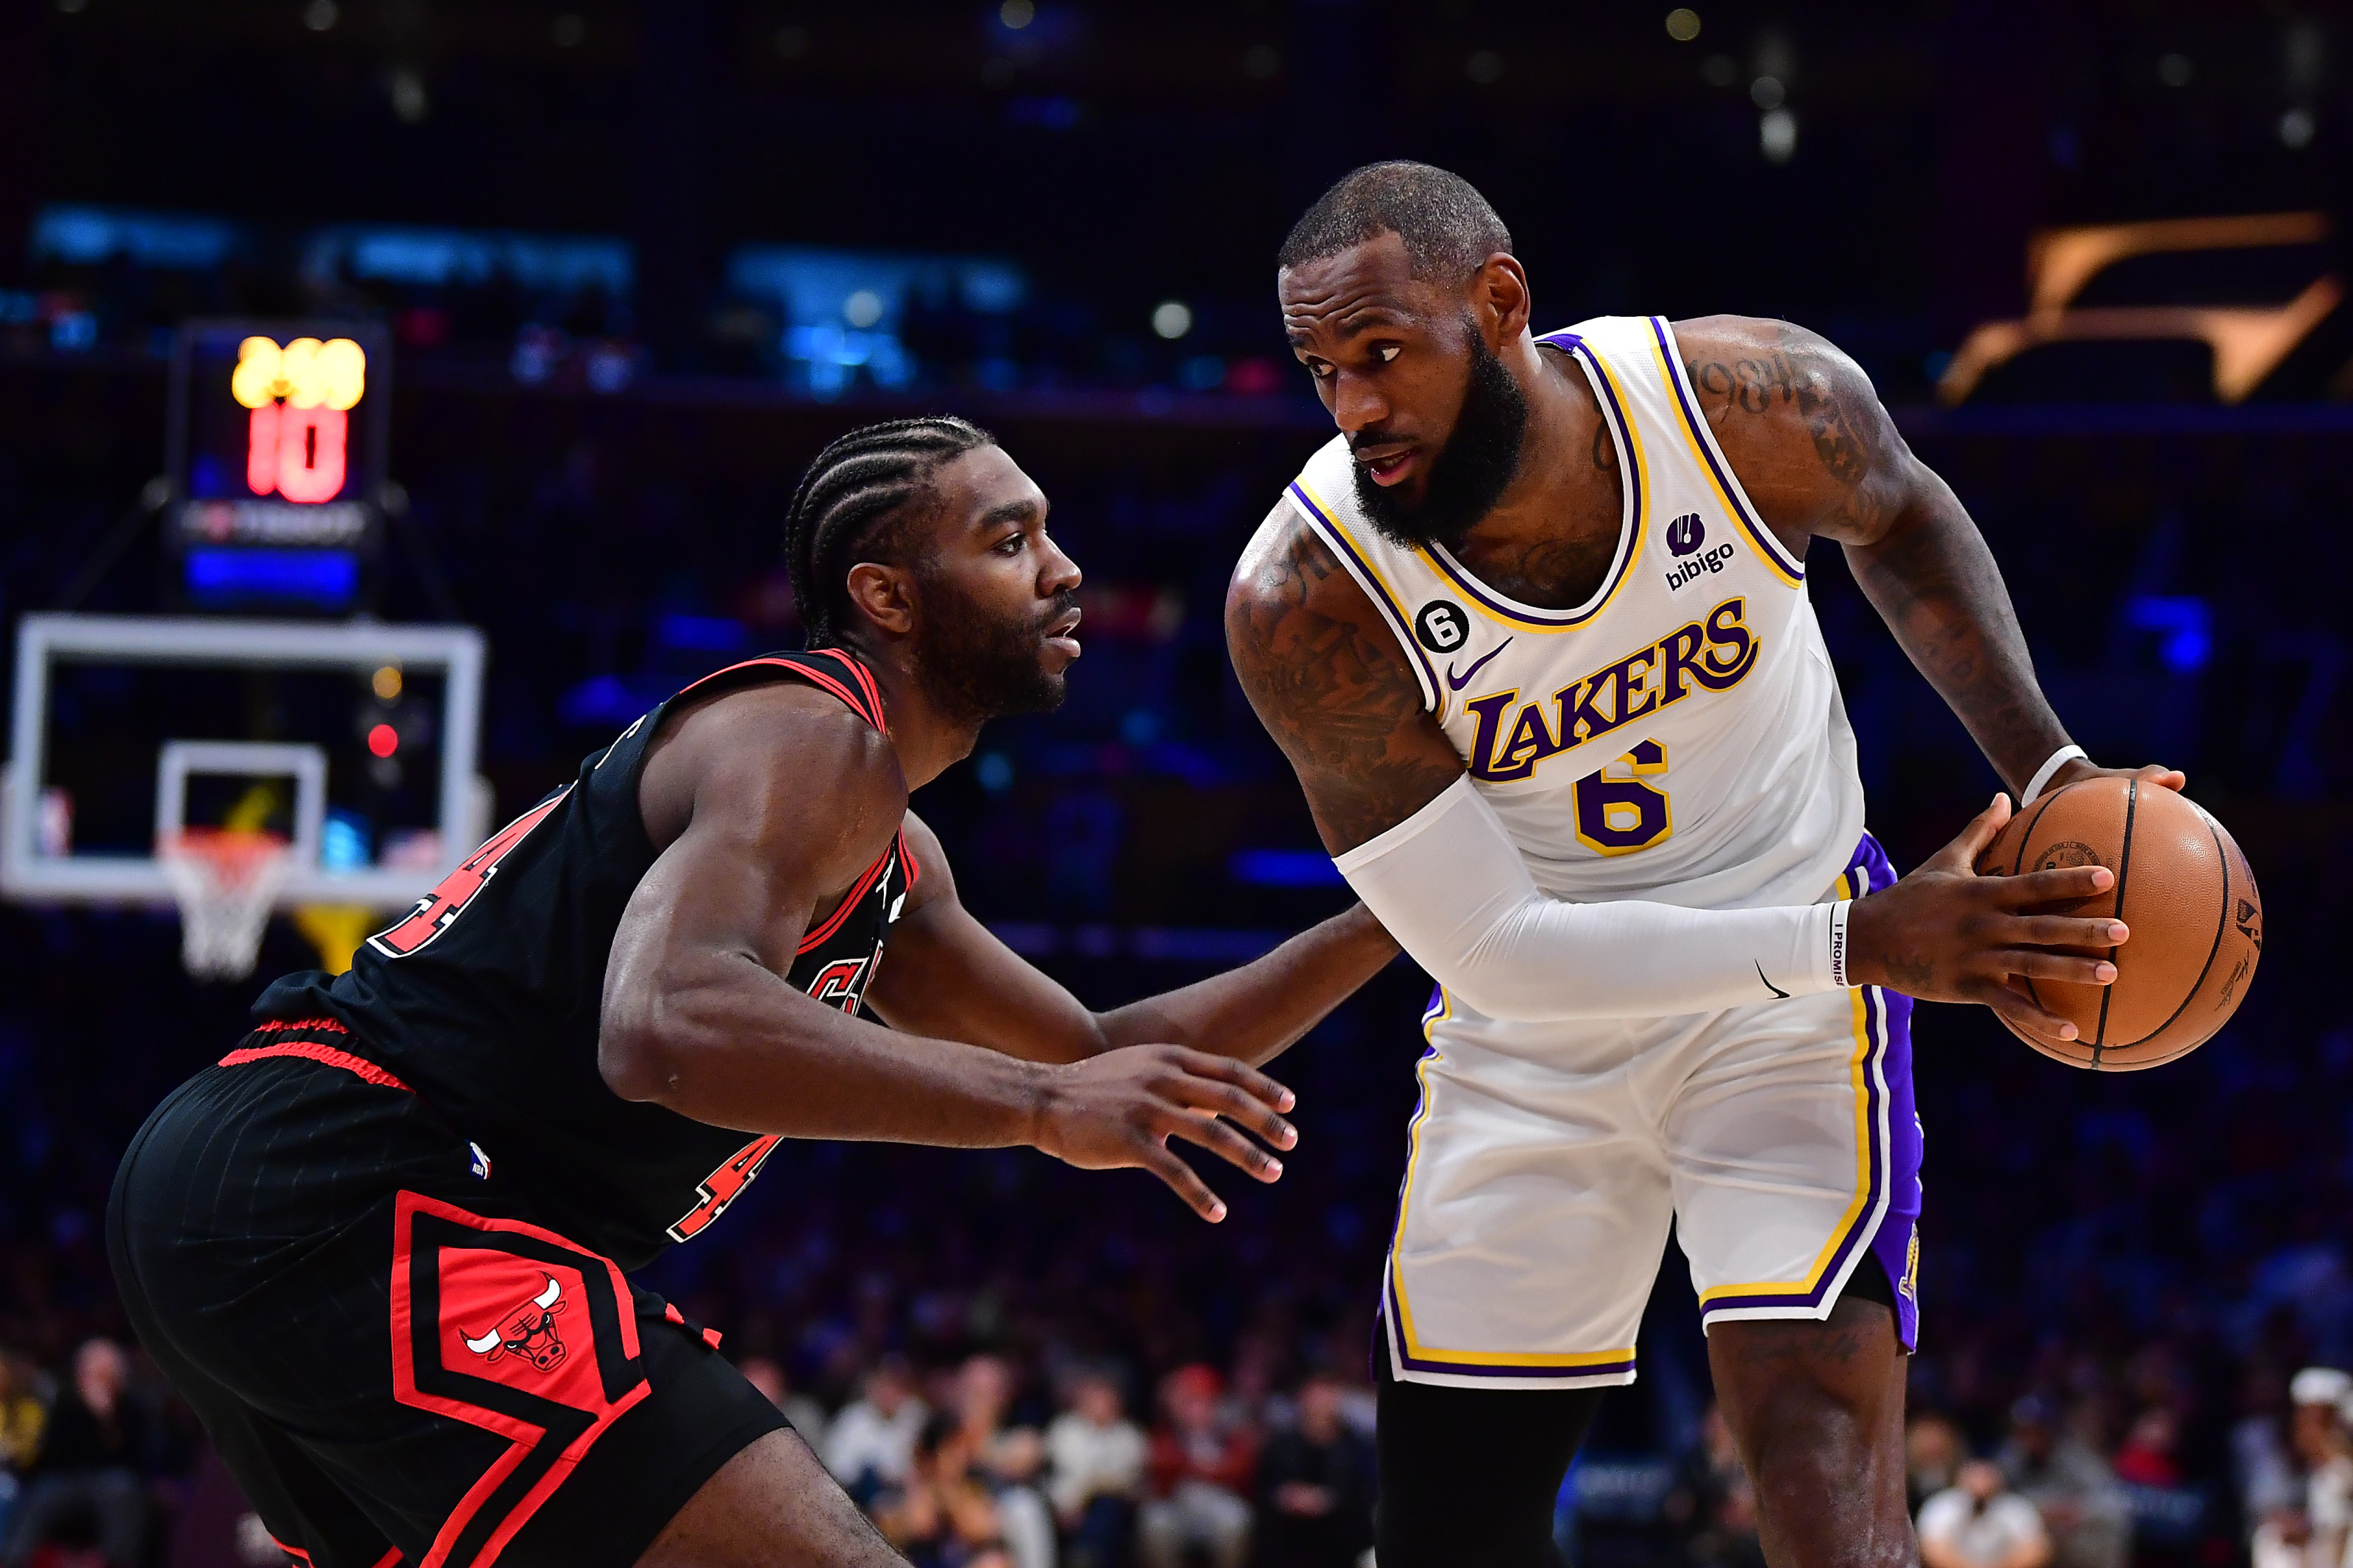 Lakers vs Bulls Prediction, Odds, Best Bets & Team Props - NBA, Mar. 29